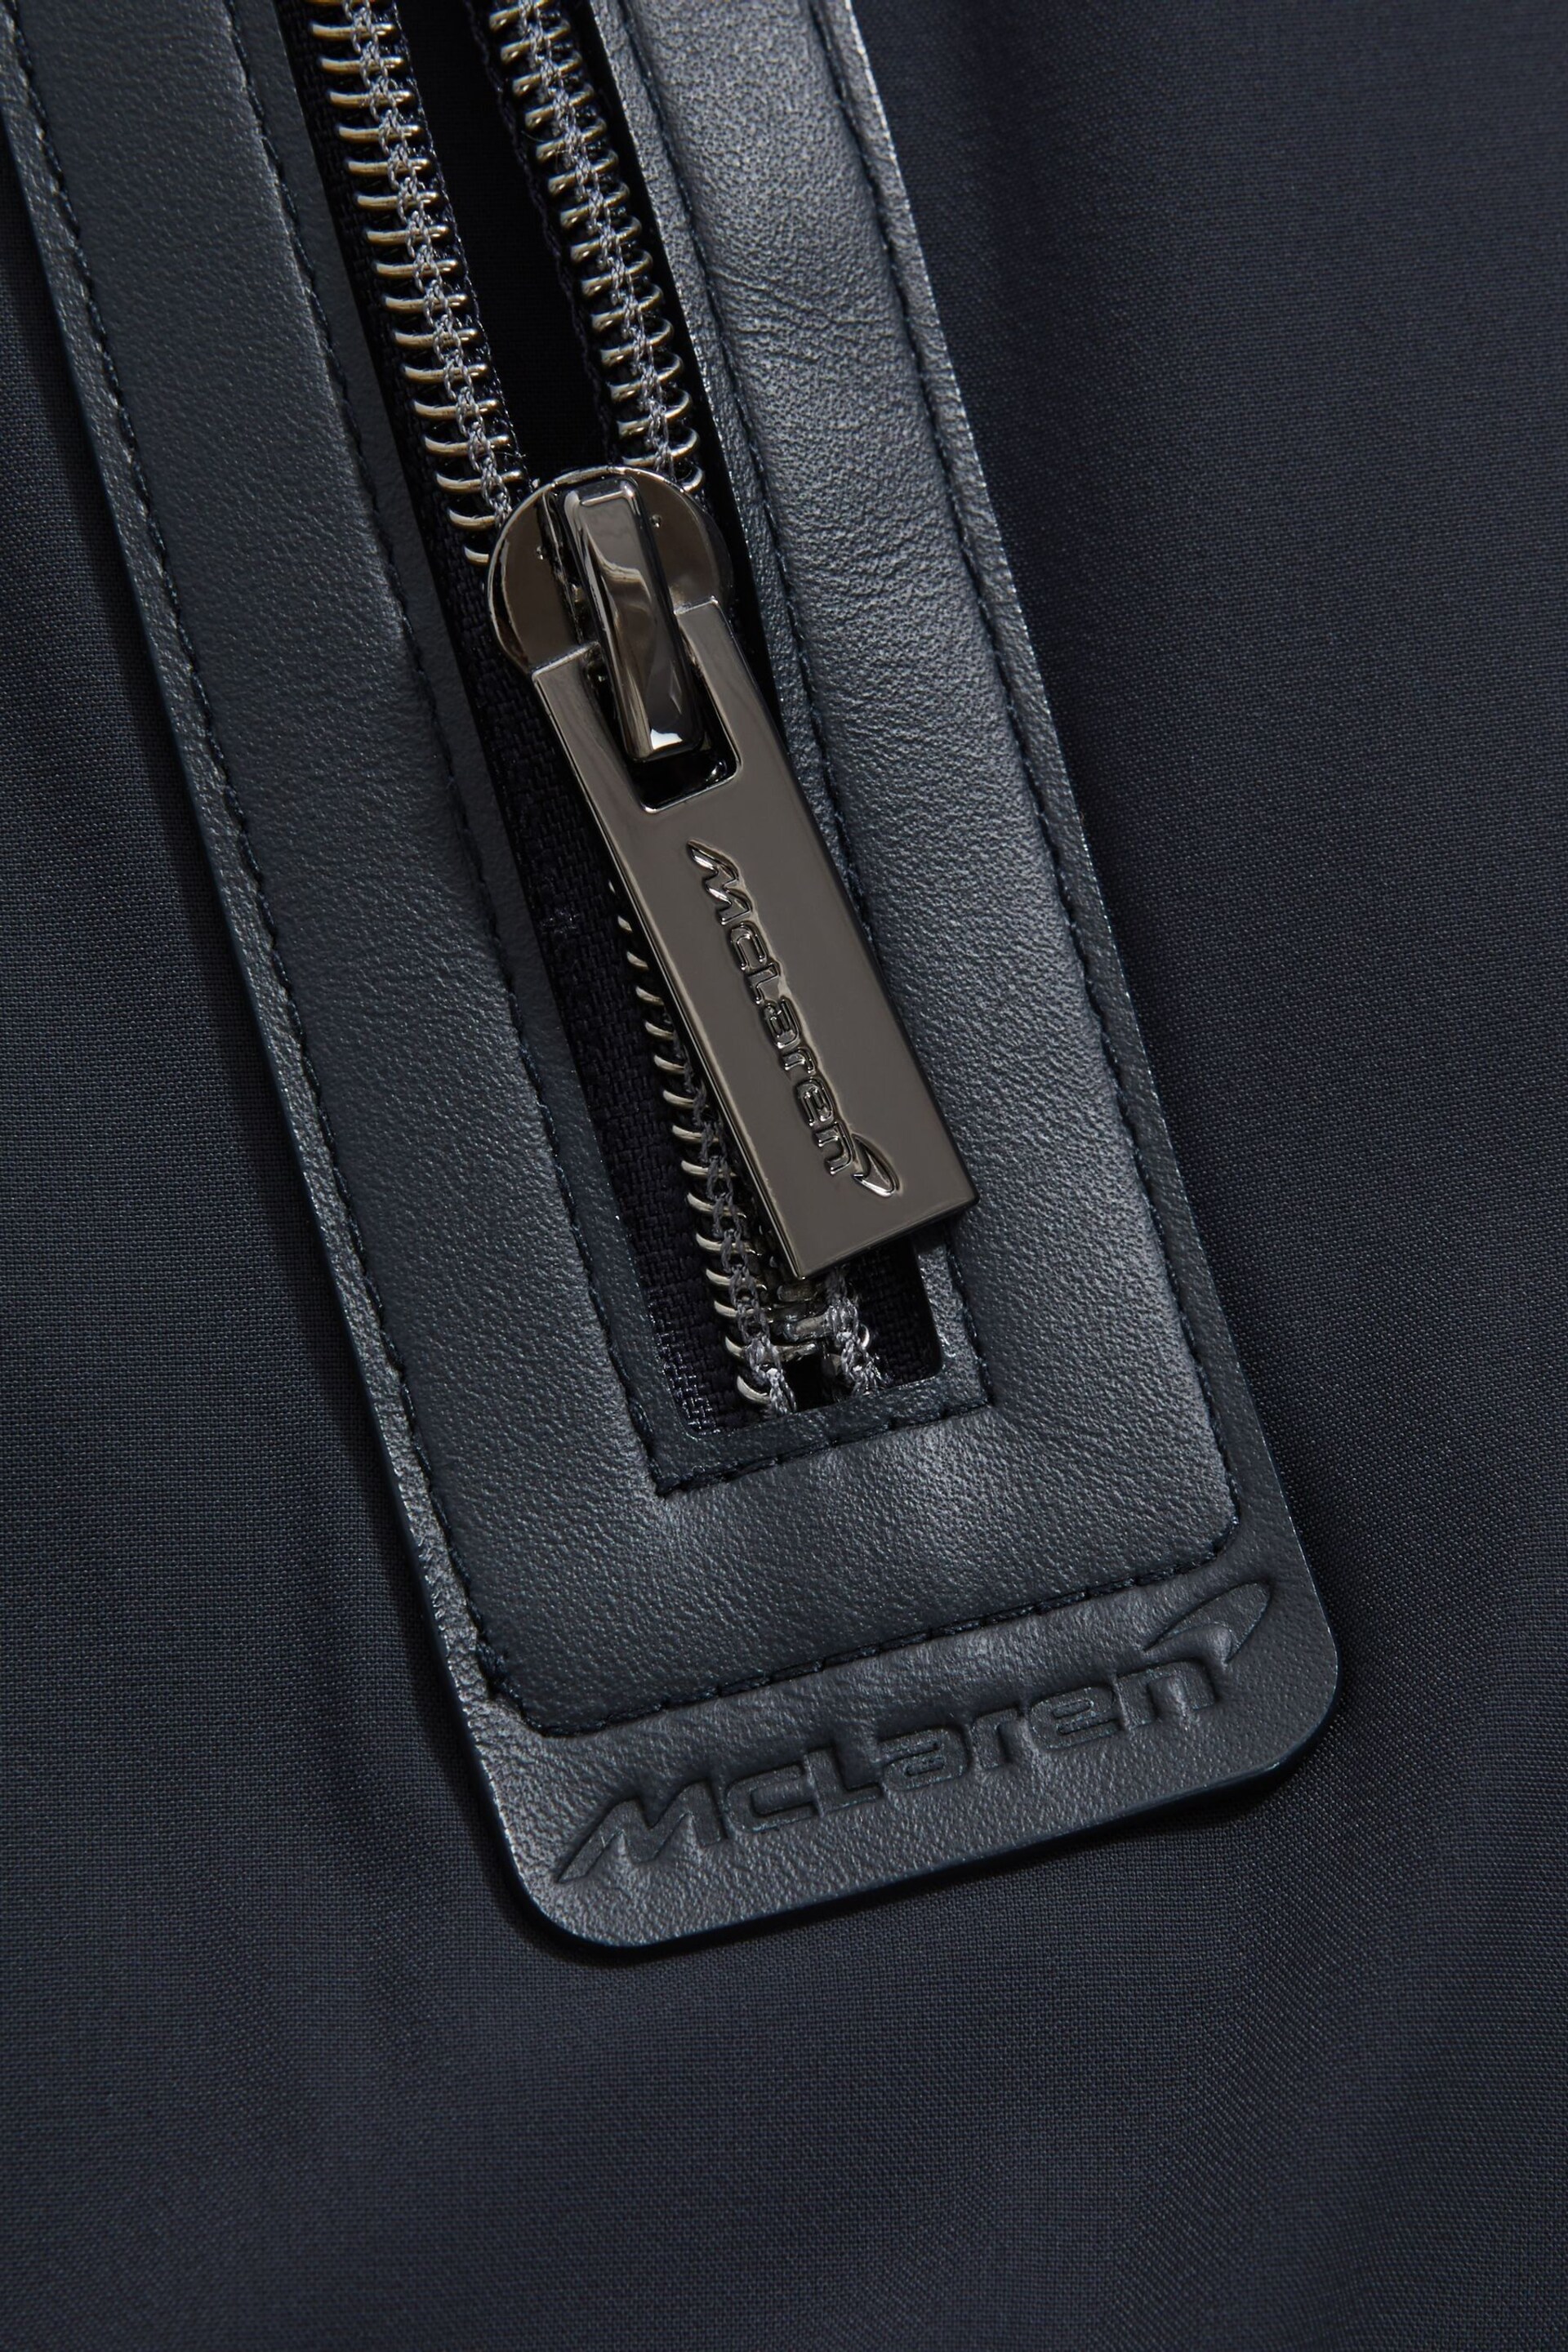 McLaren F1 Hybrid Funnel Neck Jacket - Image 8 of 10